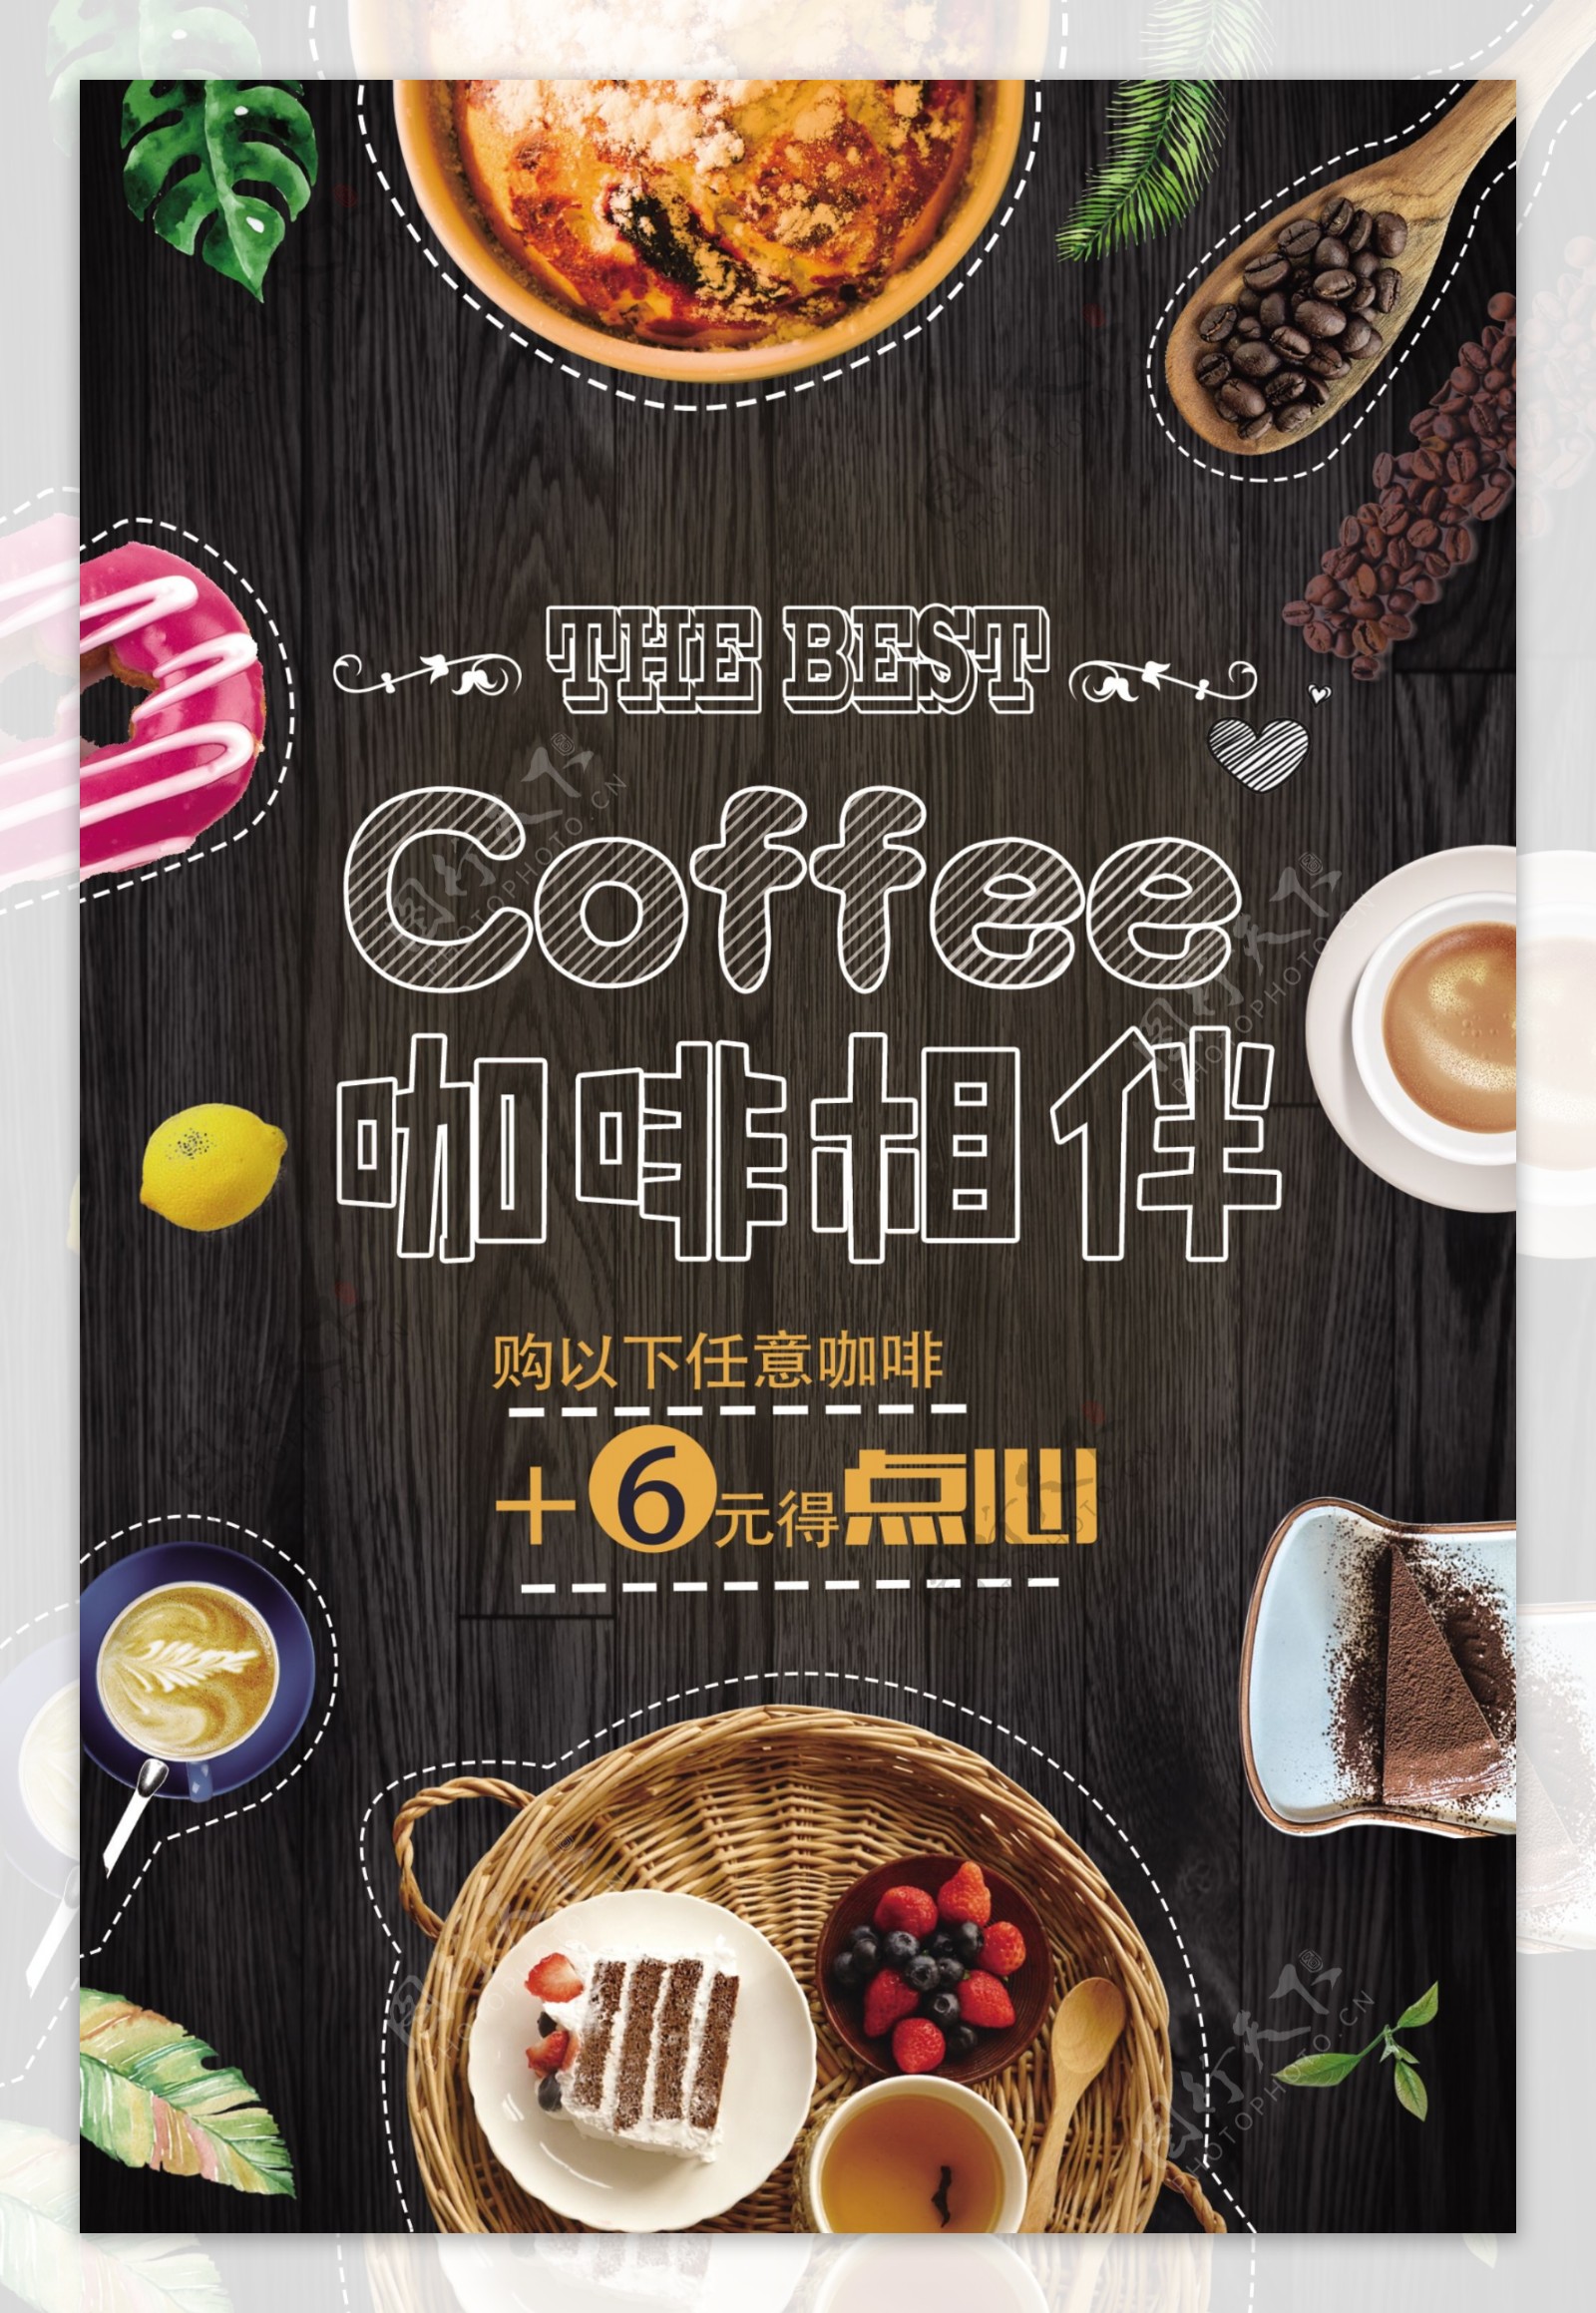 咖啡甜点海报